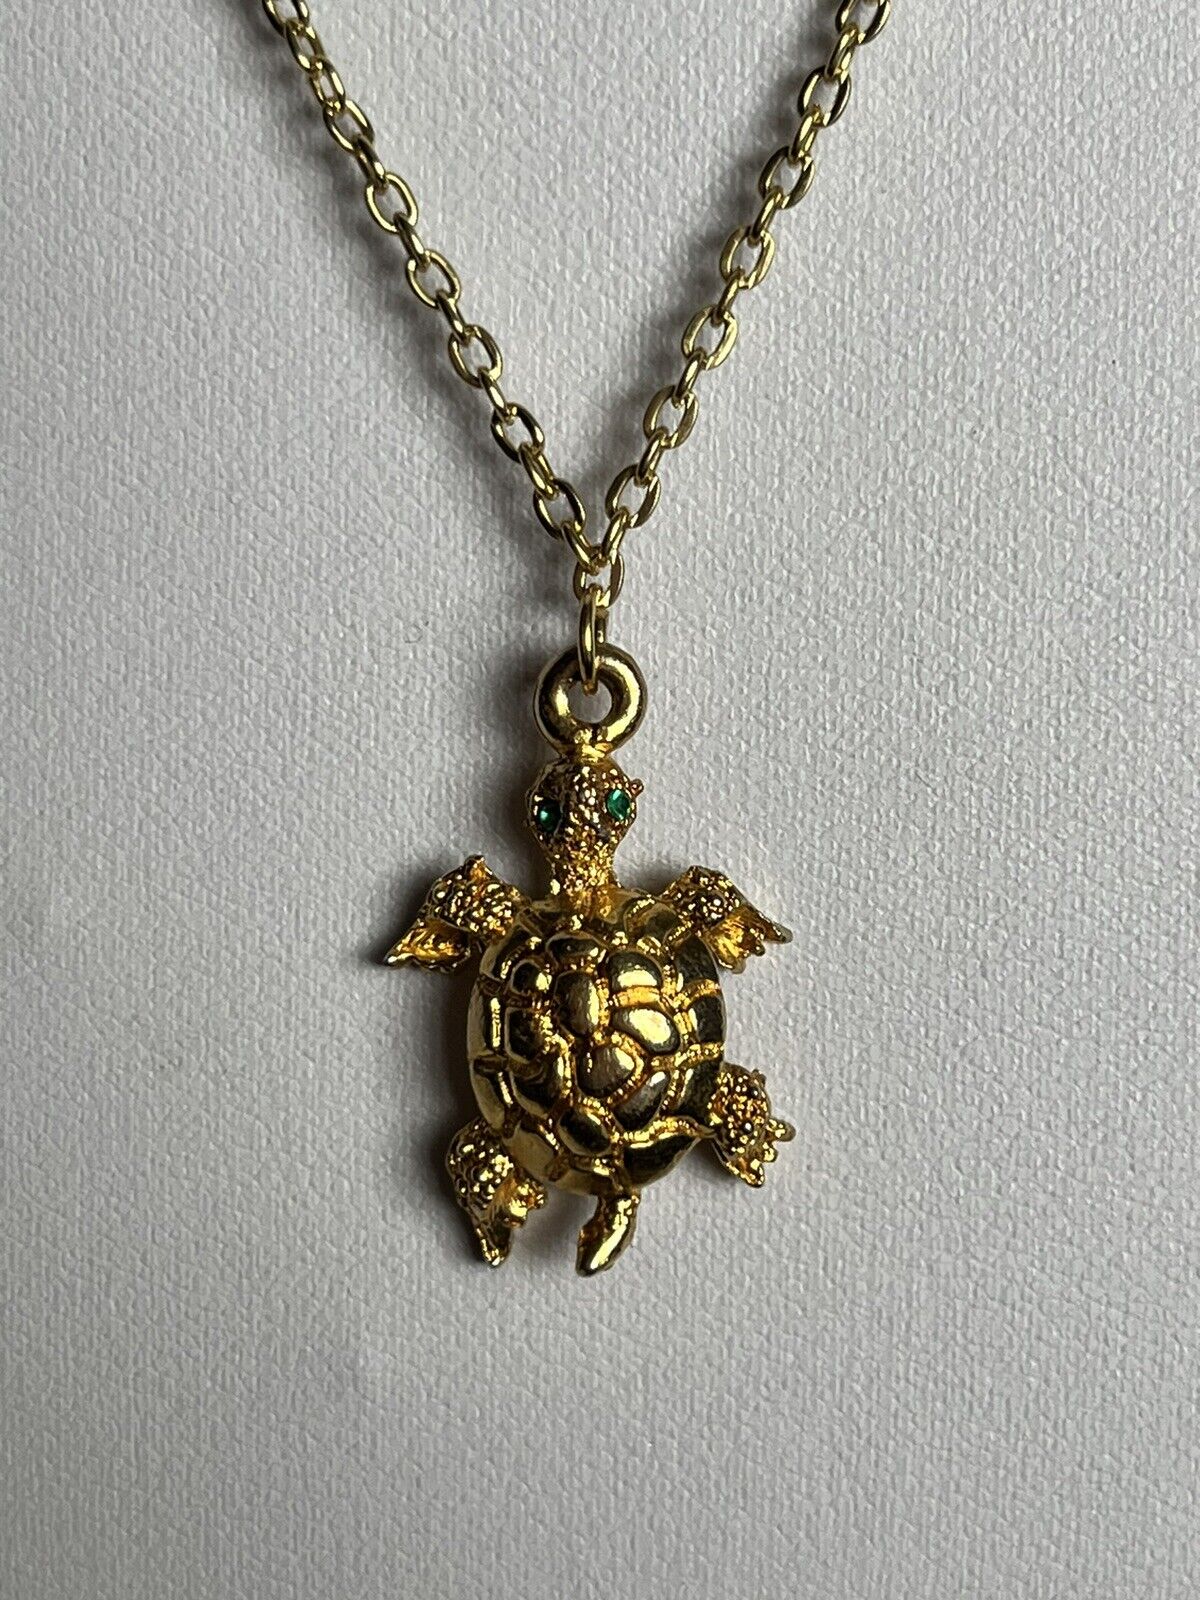 Vintage Gold Tone Turtle Tortoise Pendant Necklace